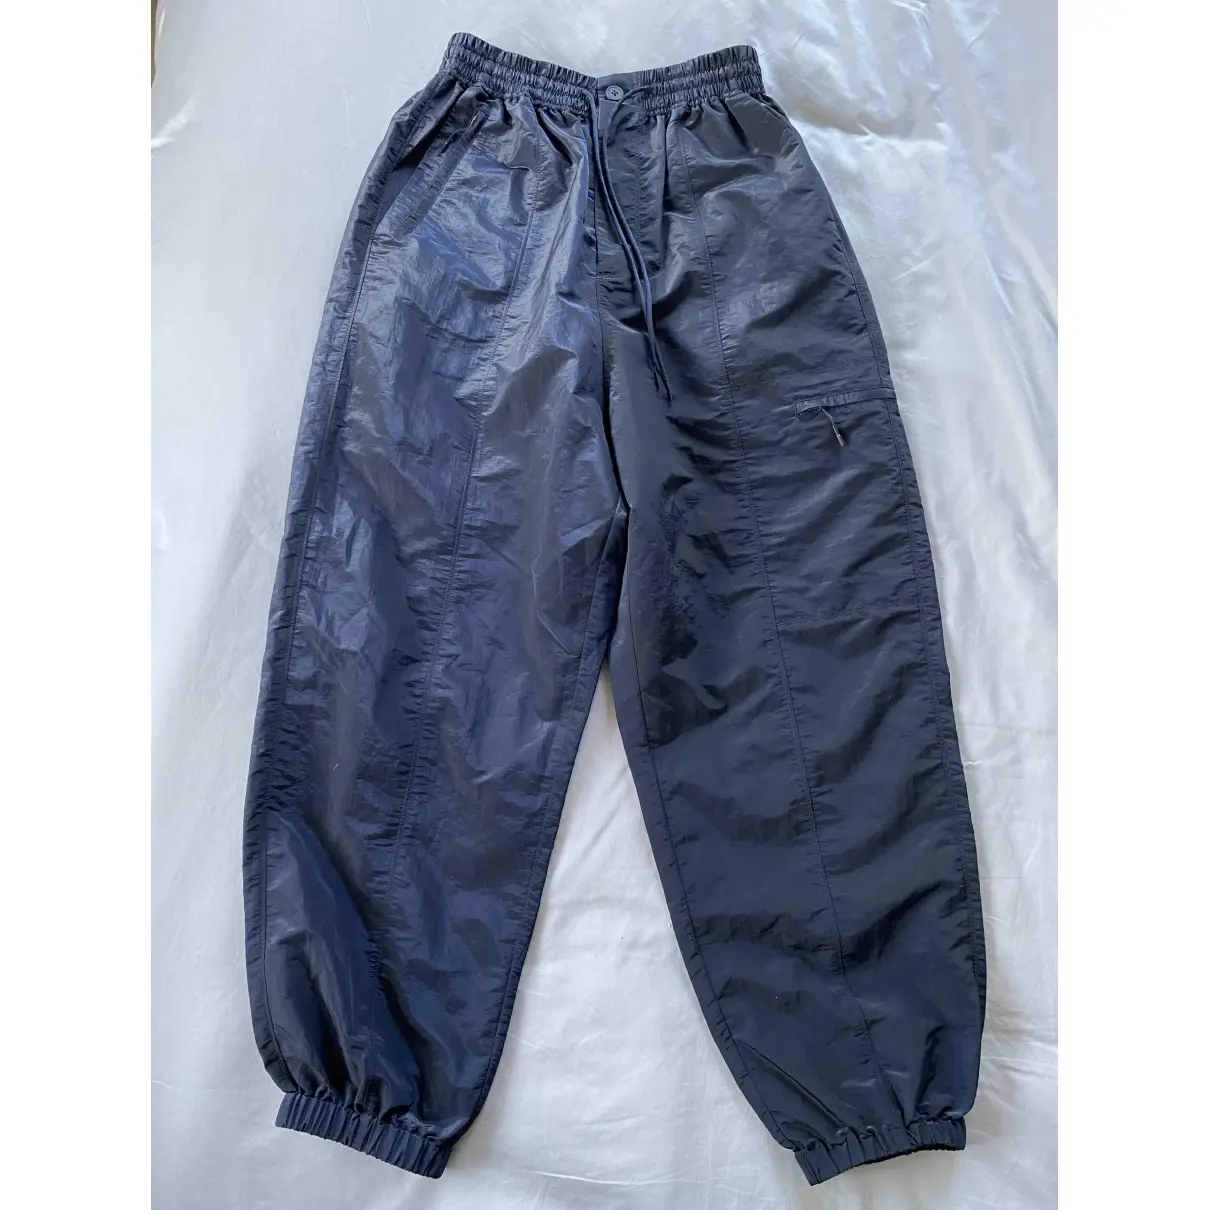 Buy Y-3 Trousers online